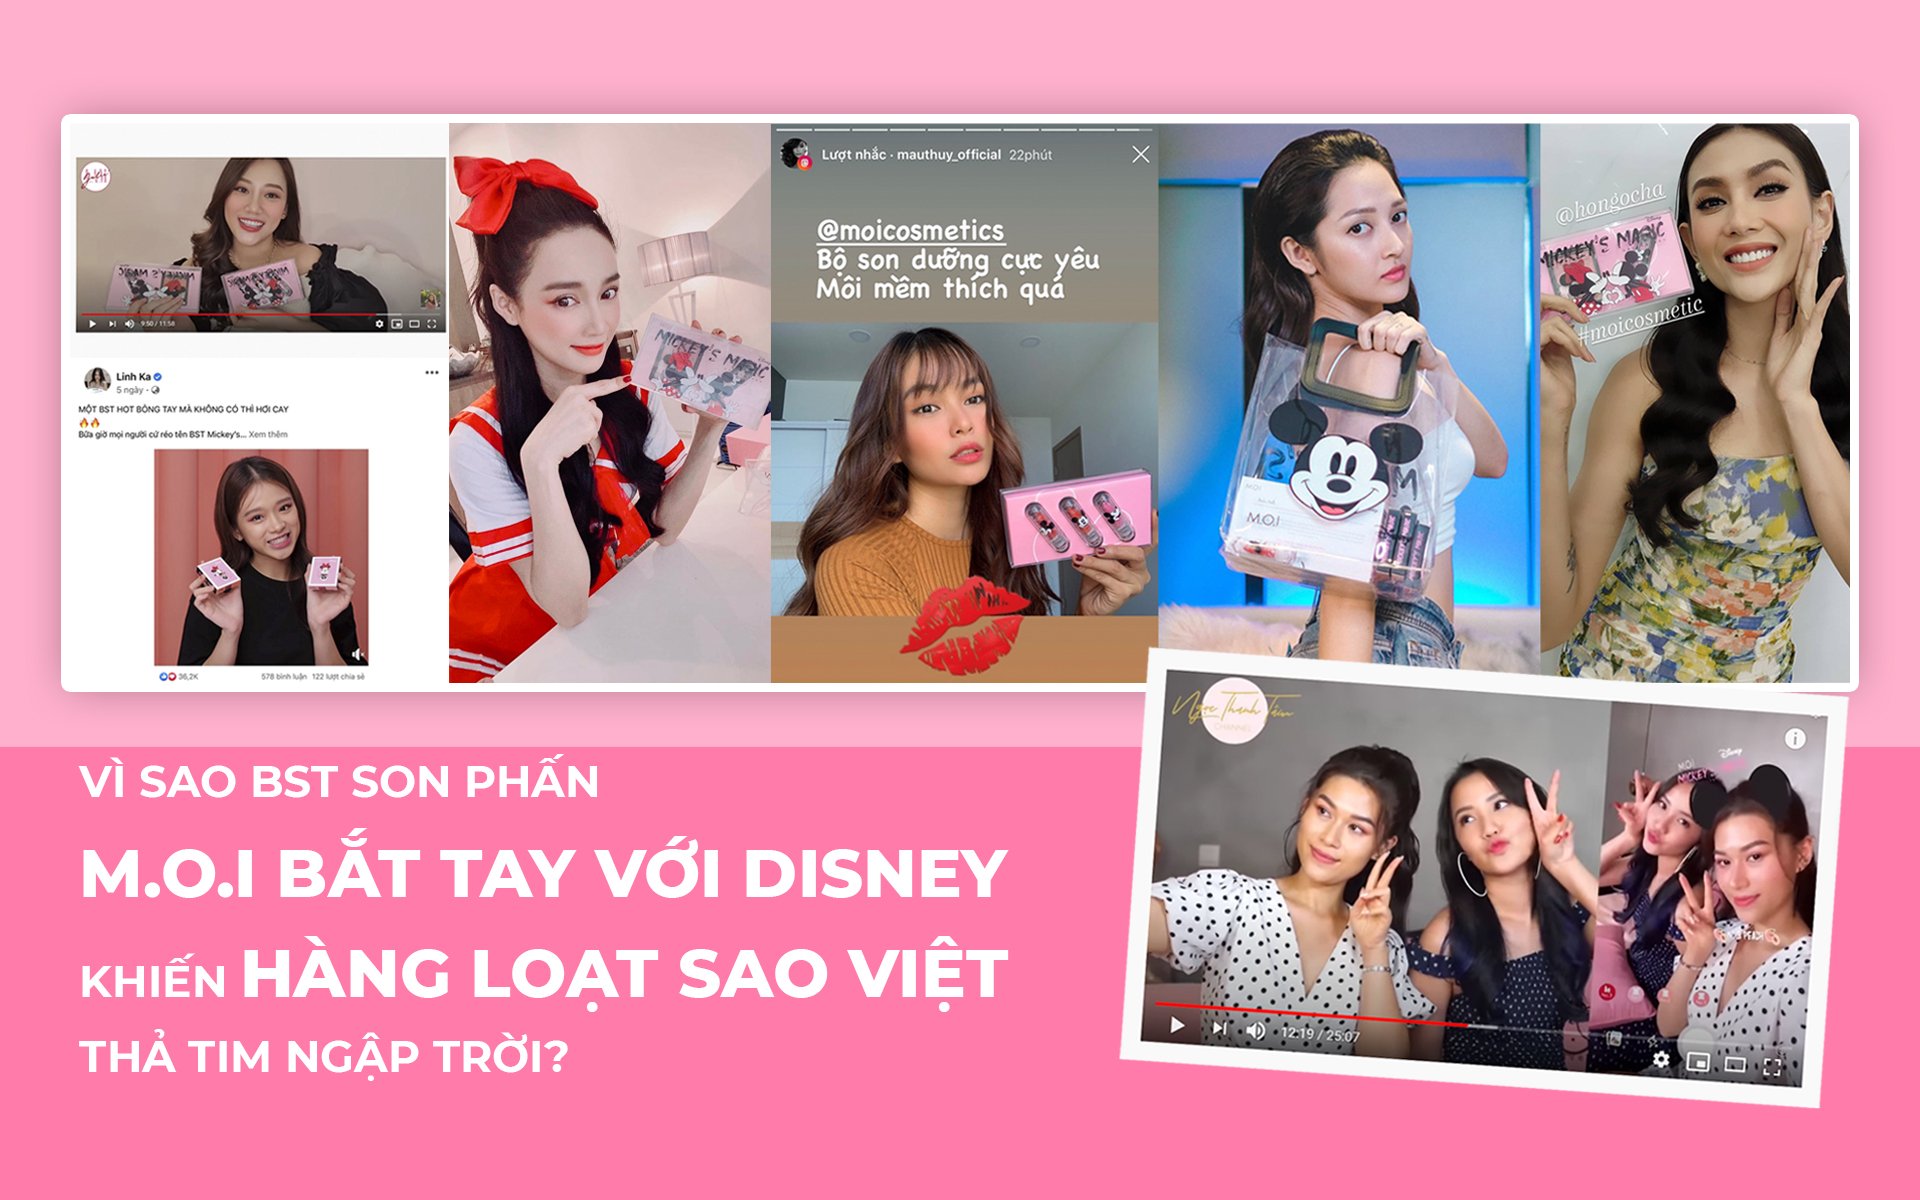 Vì sao BST son phấn M.O.I Cosmetics bắt tay với Disney của Hà Hồ lại khiến hàng loạt sao Việt thả tim ngập trời thế này?